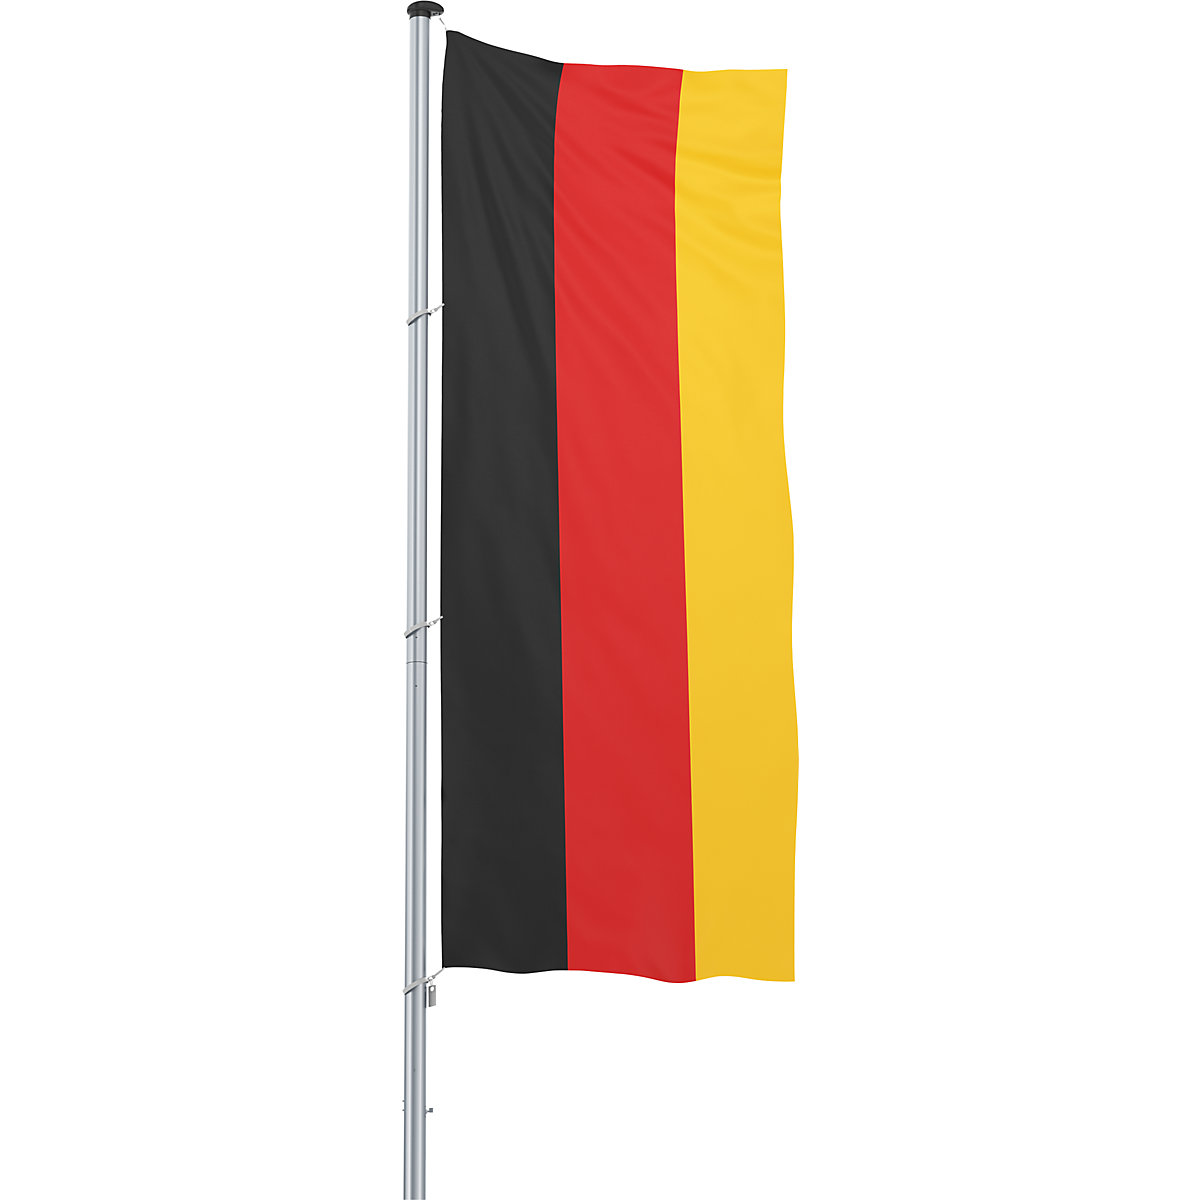 Hijsvlag/landvlag – Mannus, formaat 1,2 x 3 m, Duitsland-11